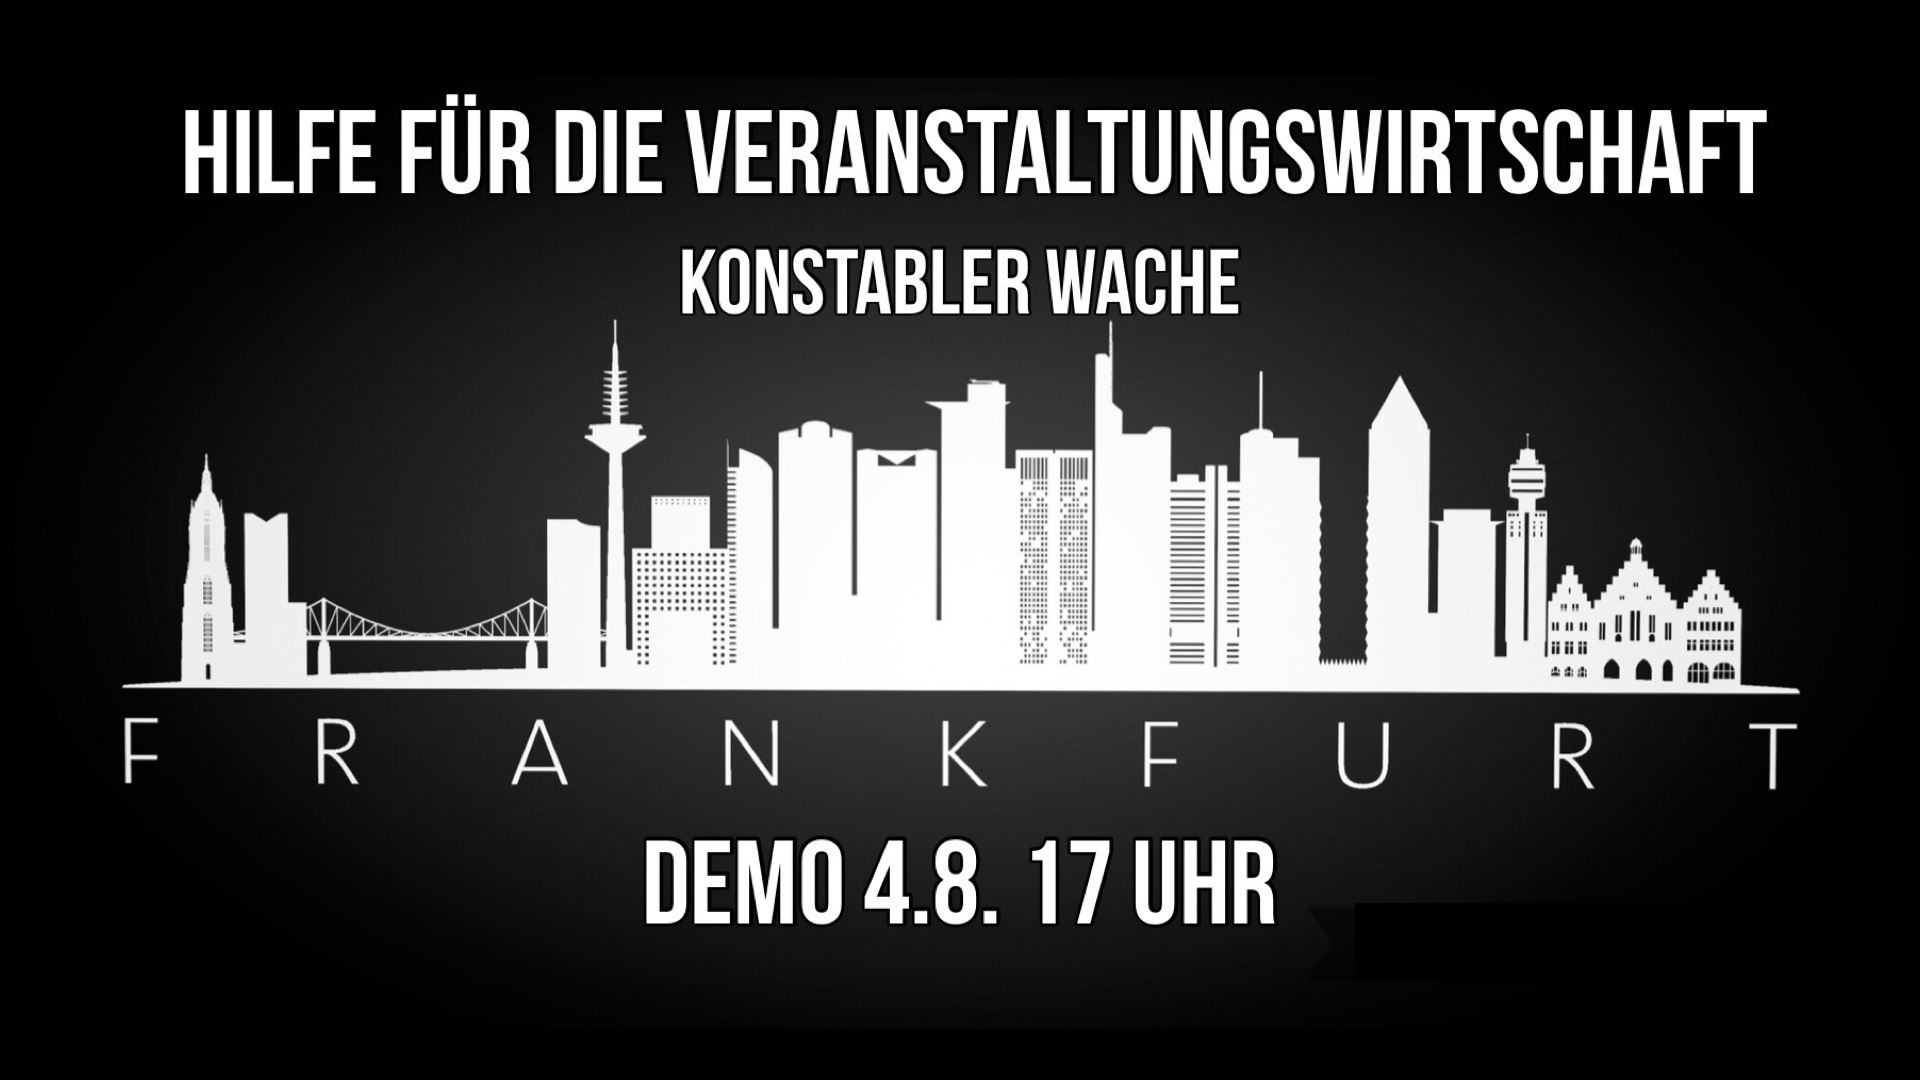 Alarmstufe Rot: Demo der Veranstaltungswirtschaft #wirfuereuch @Frankfurt Konstablerwache 04.08.2020